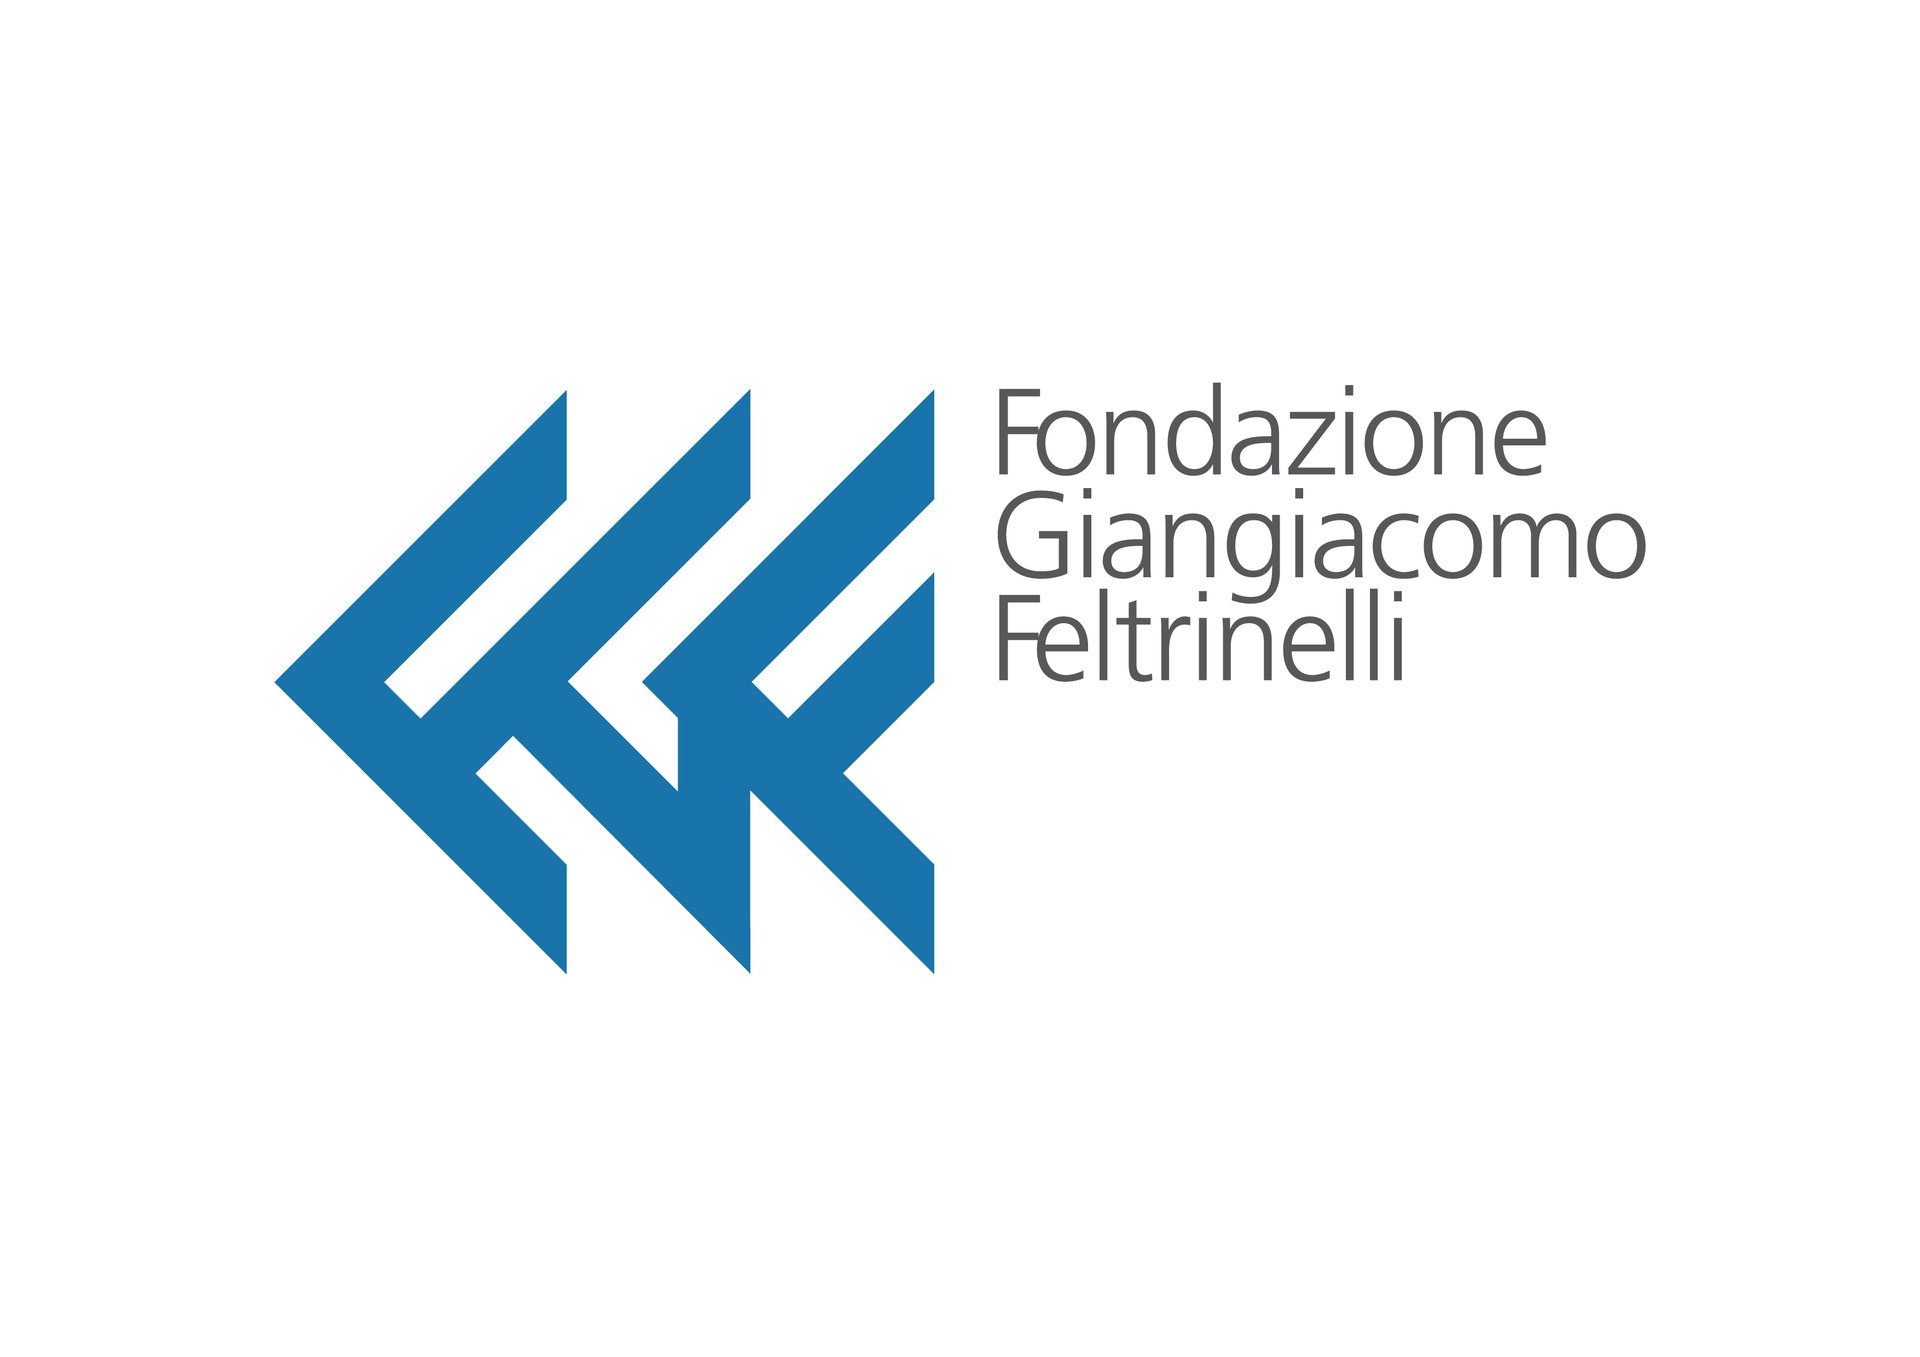 Making History: Gomorra dietro le quinte in Fondazione Feltrinelli